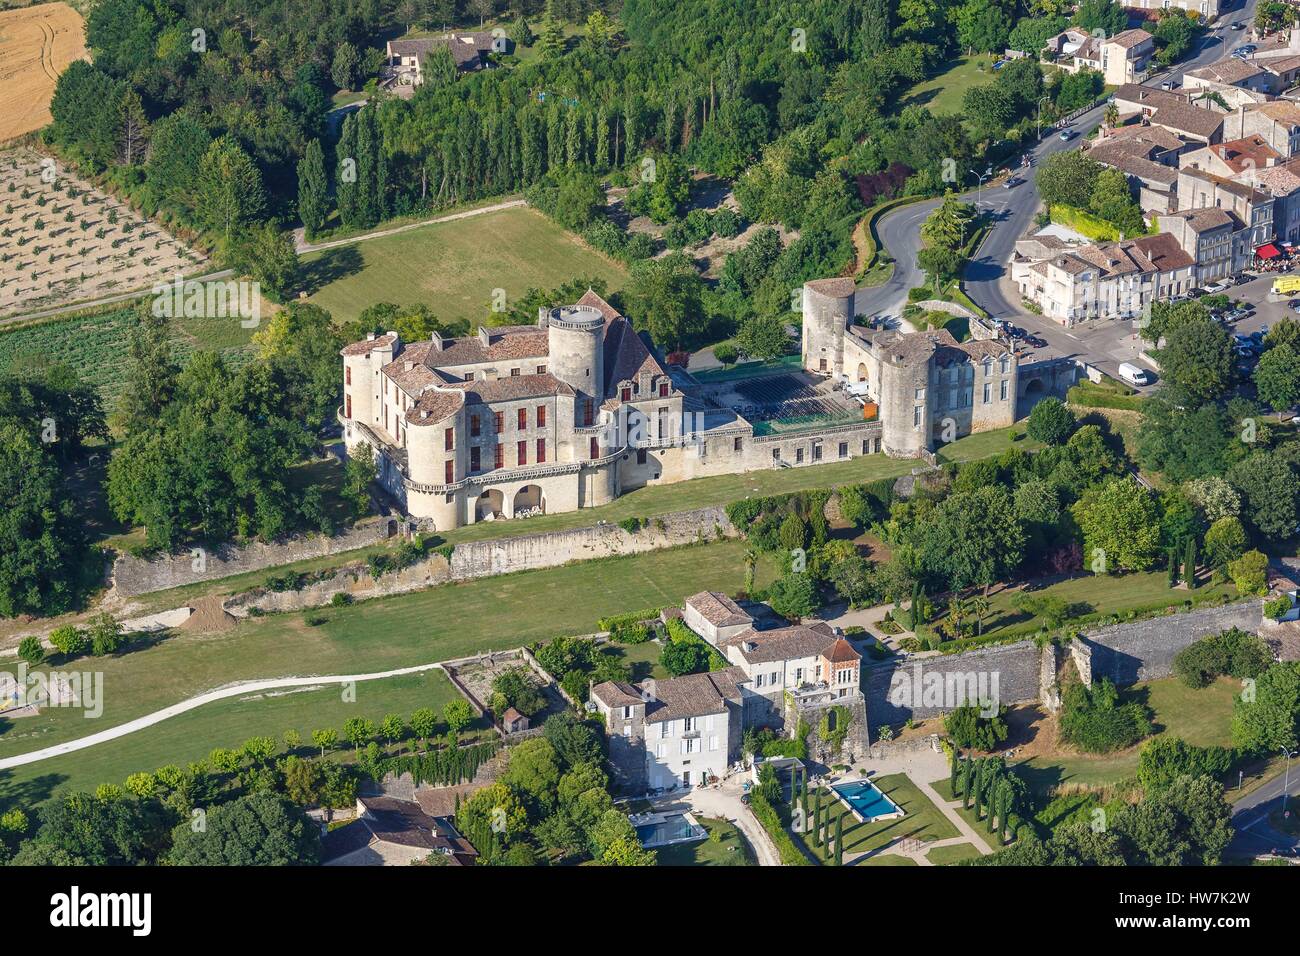 France, Lot et Garonne, Duras, the castle (aerial view) Stock Photo